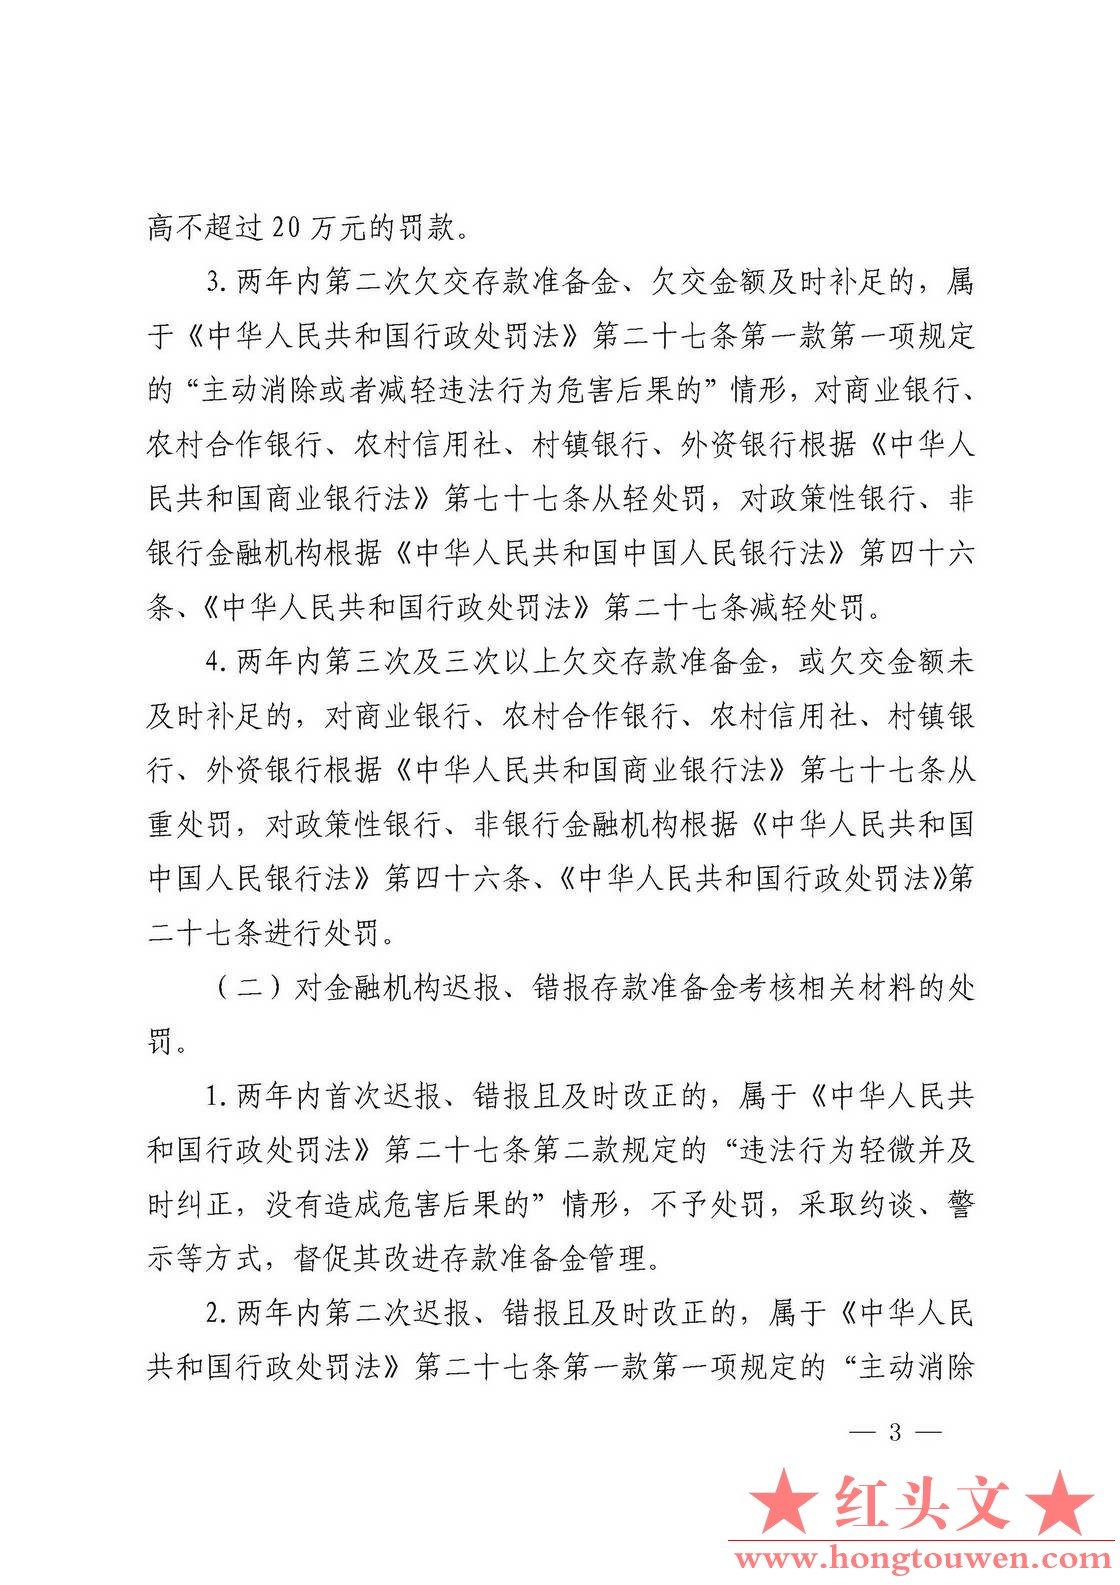 银发[2018]297号-中国人民银行关于加强存款准备金管理有关事项的通知_页面_3.jpg.jpg